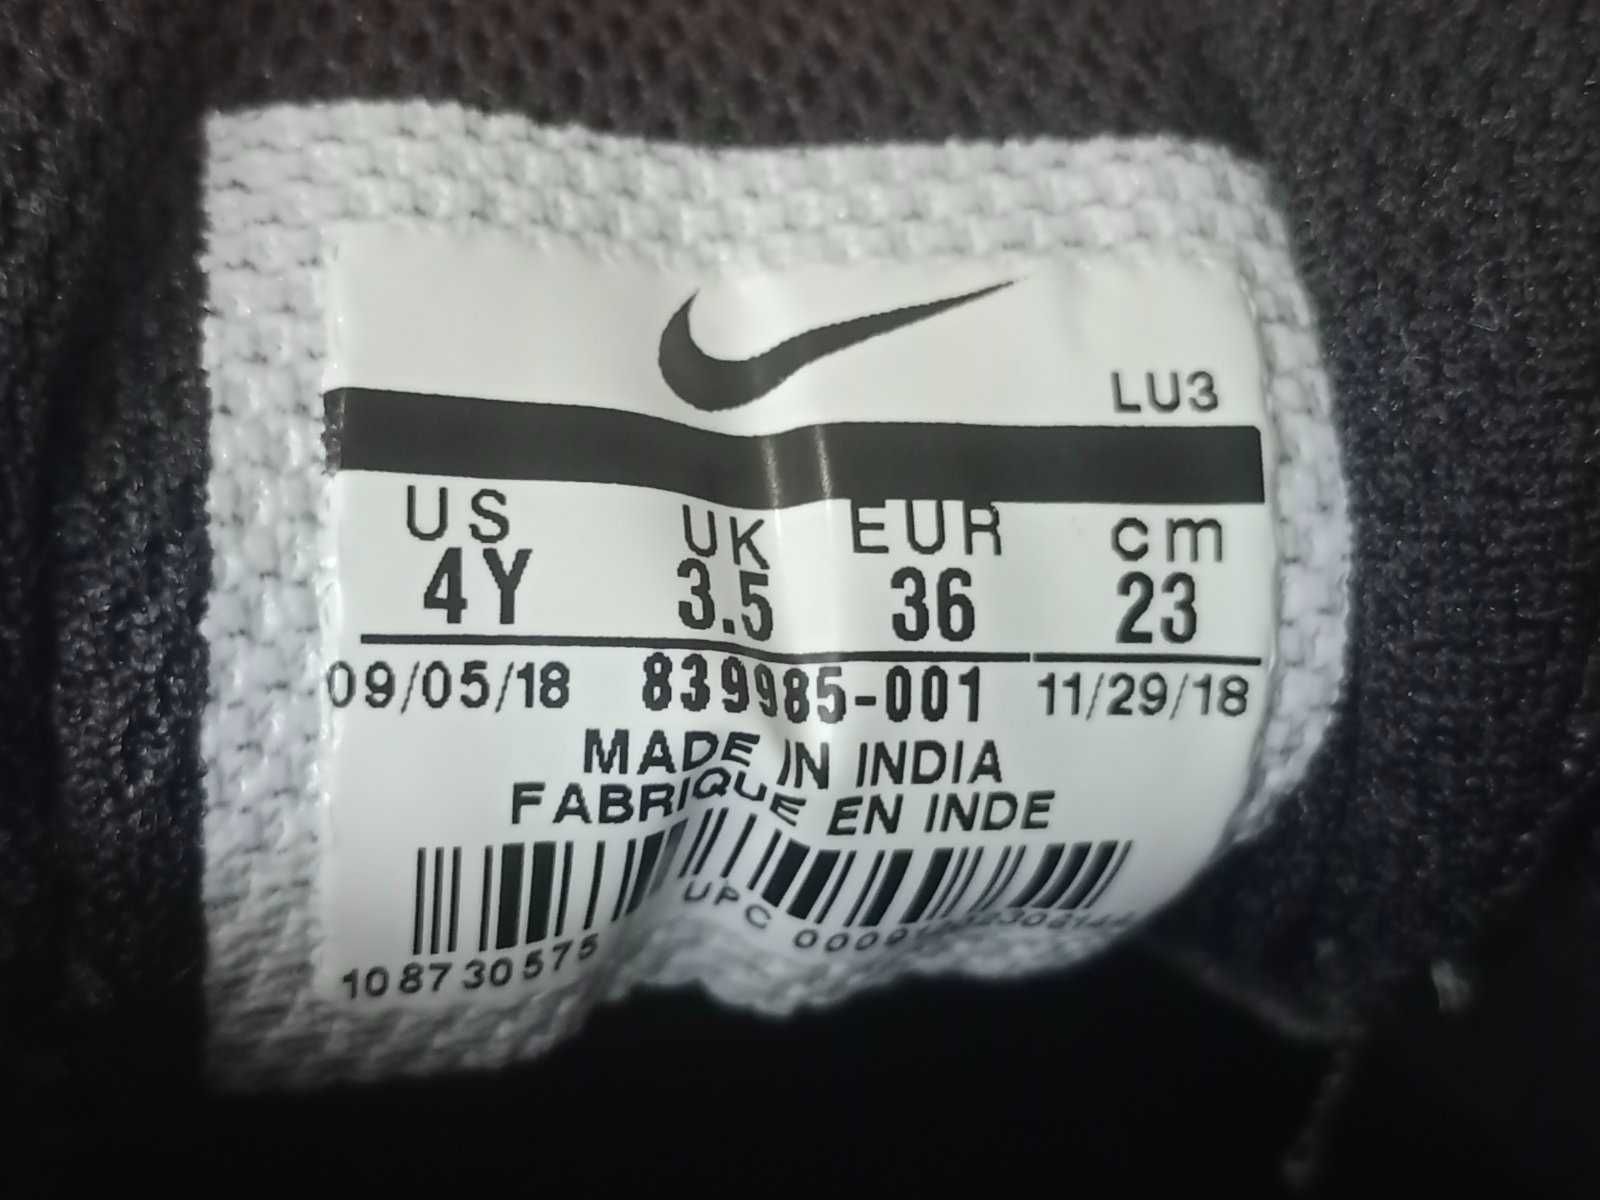 Стильные кроссовки Nike (модель 839985-001) 36 размер (23см)